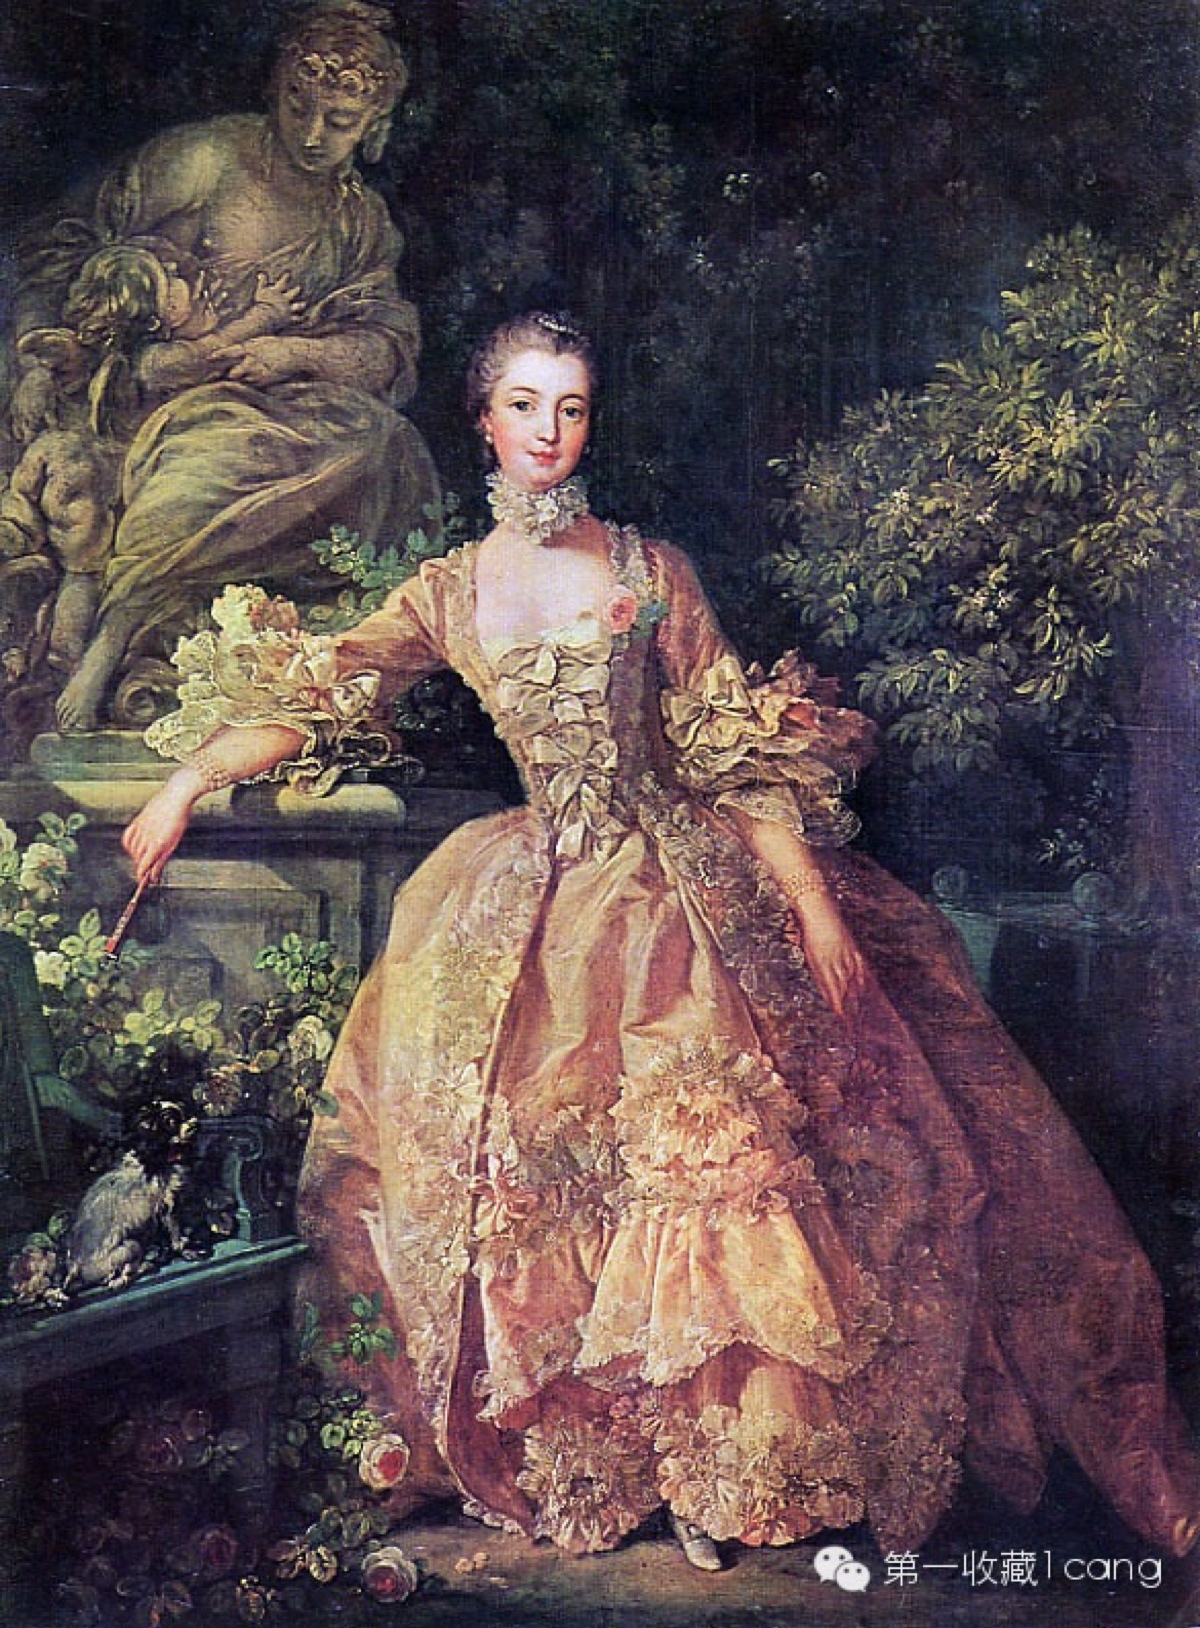 在成为路易十五情妇—实际上法国皇后的20年时间里,她成了洛可可风尚